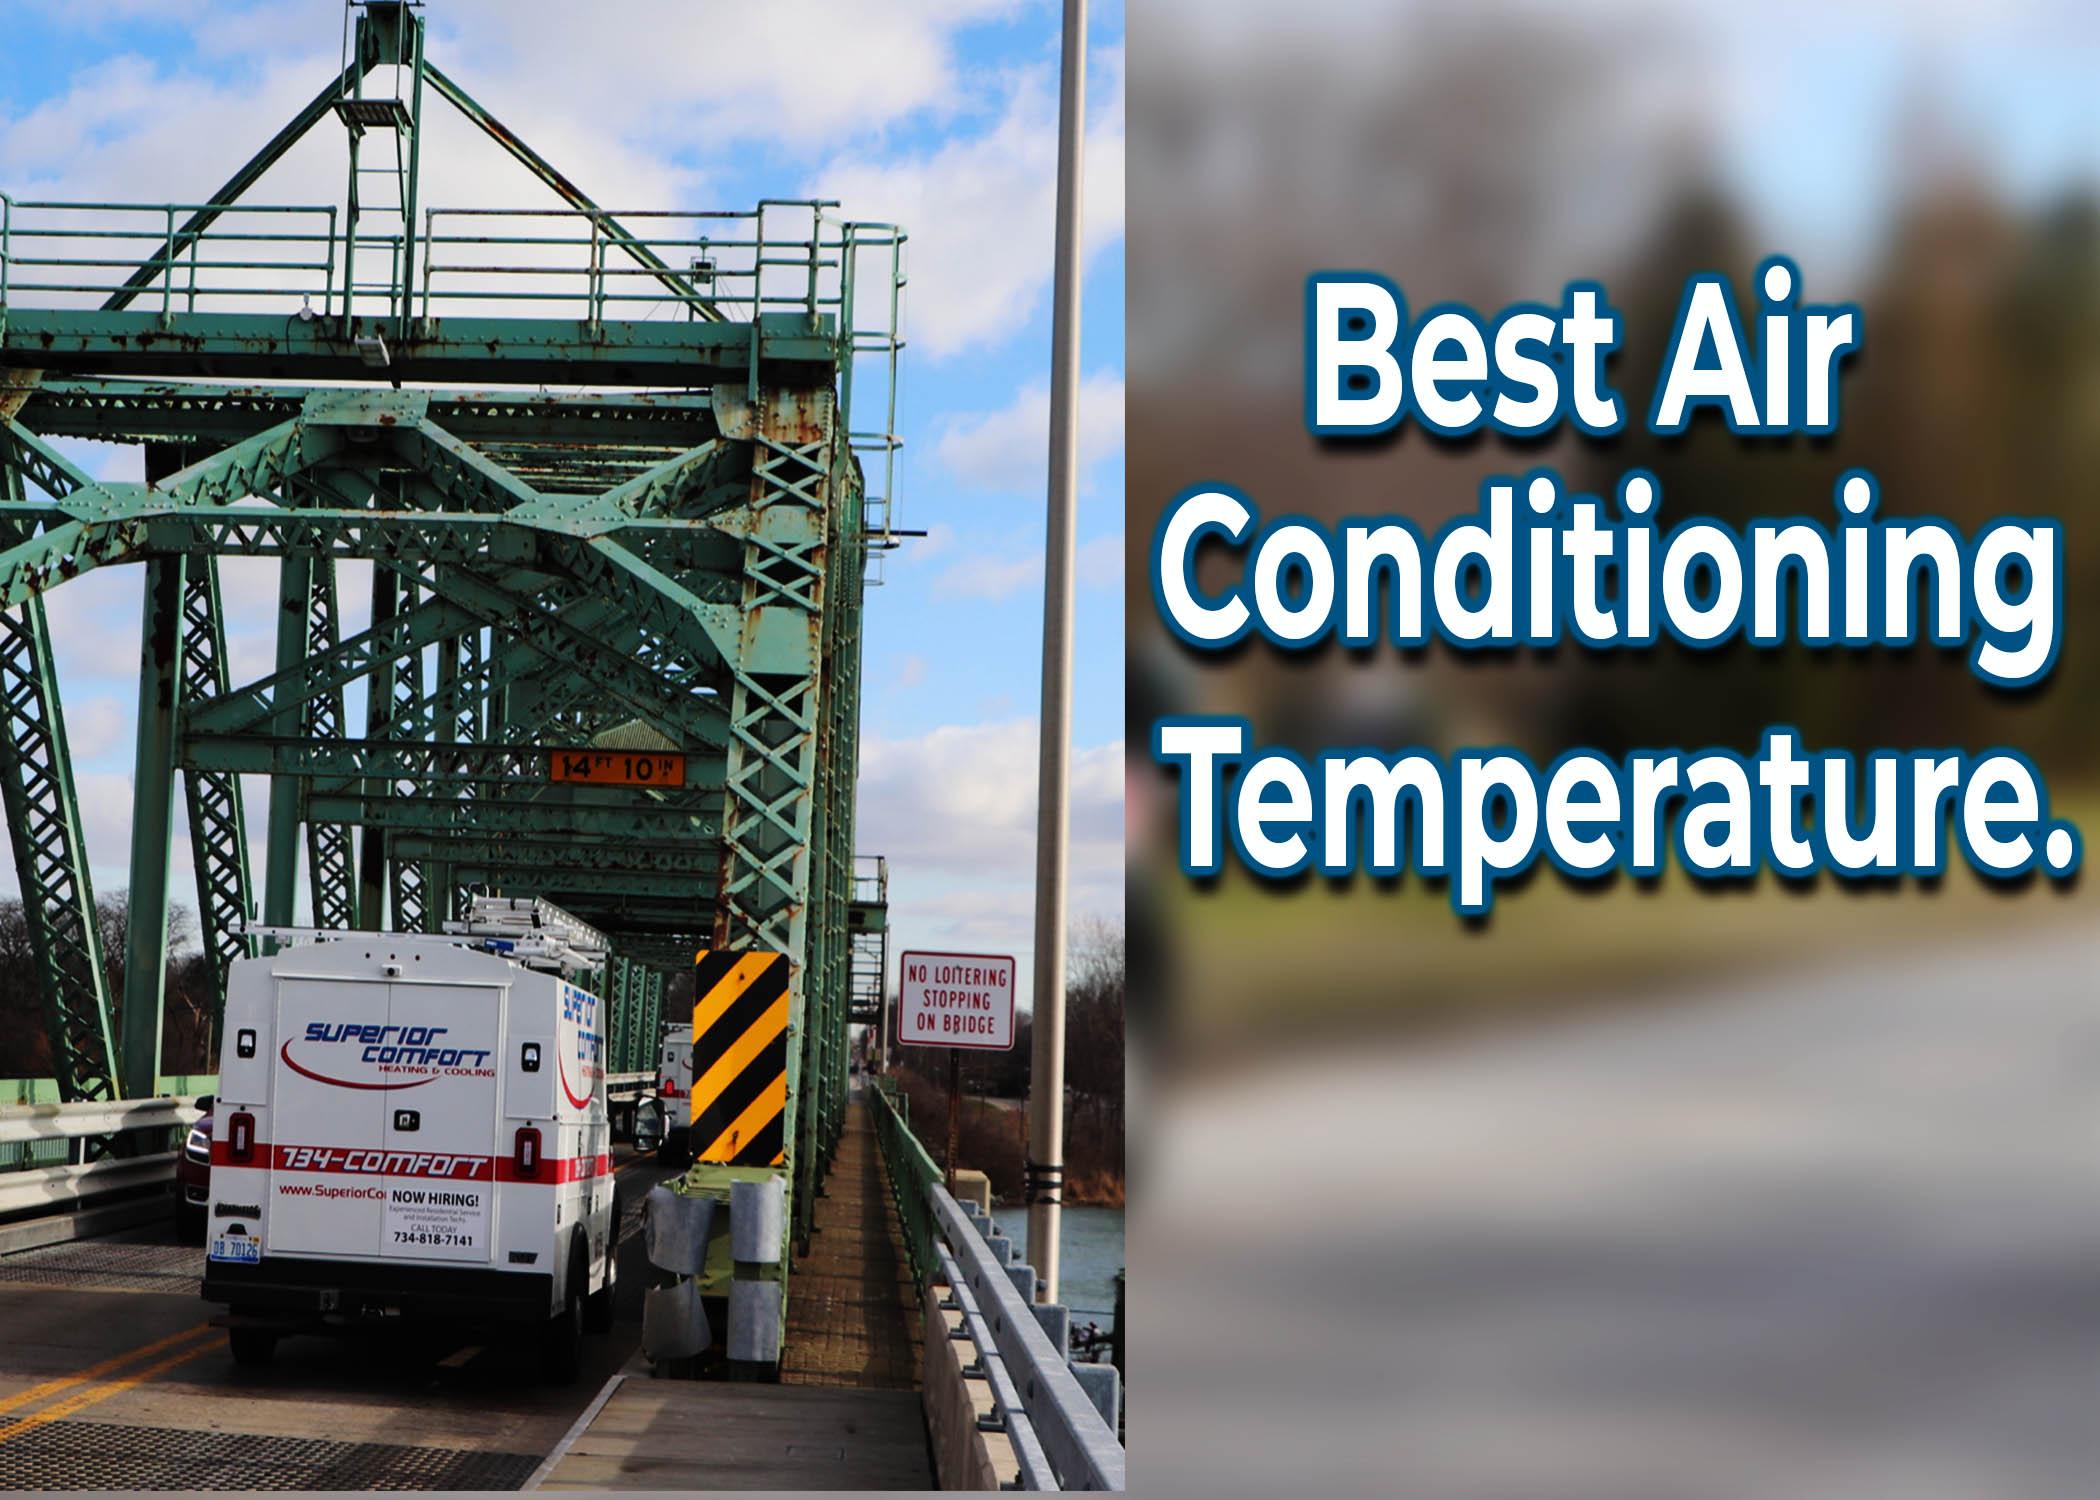 Best Air Conditioning Temperature